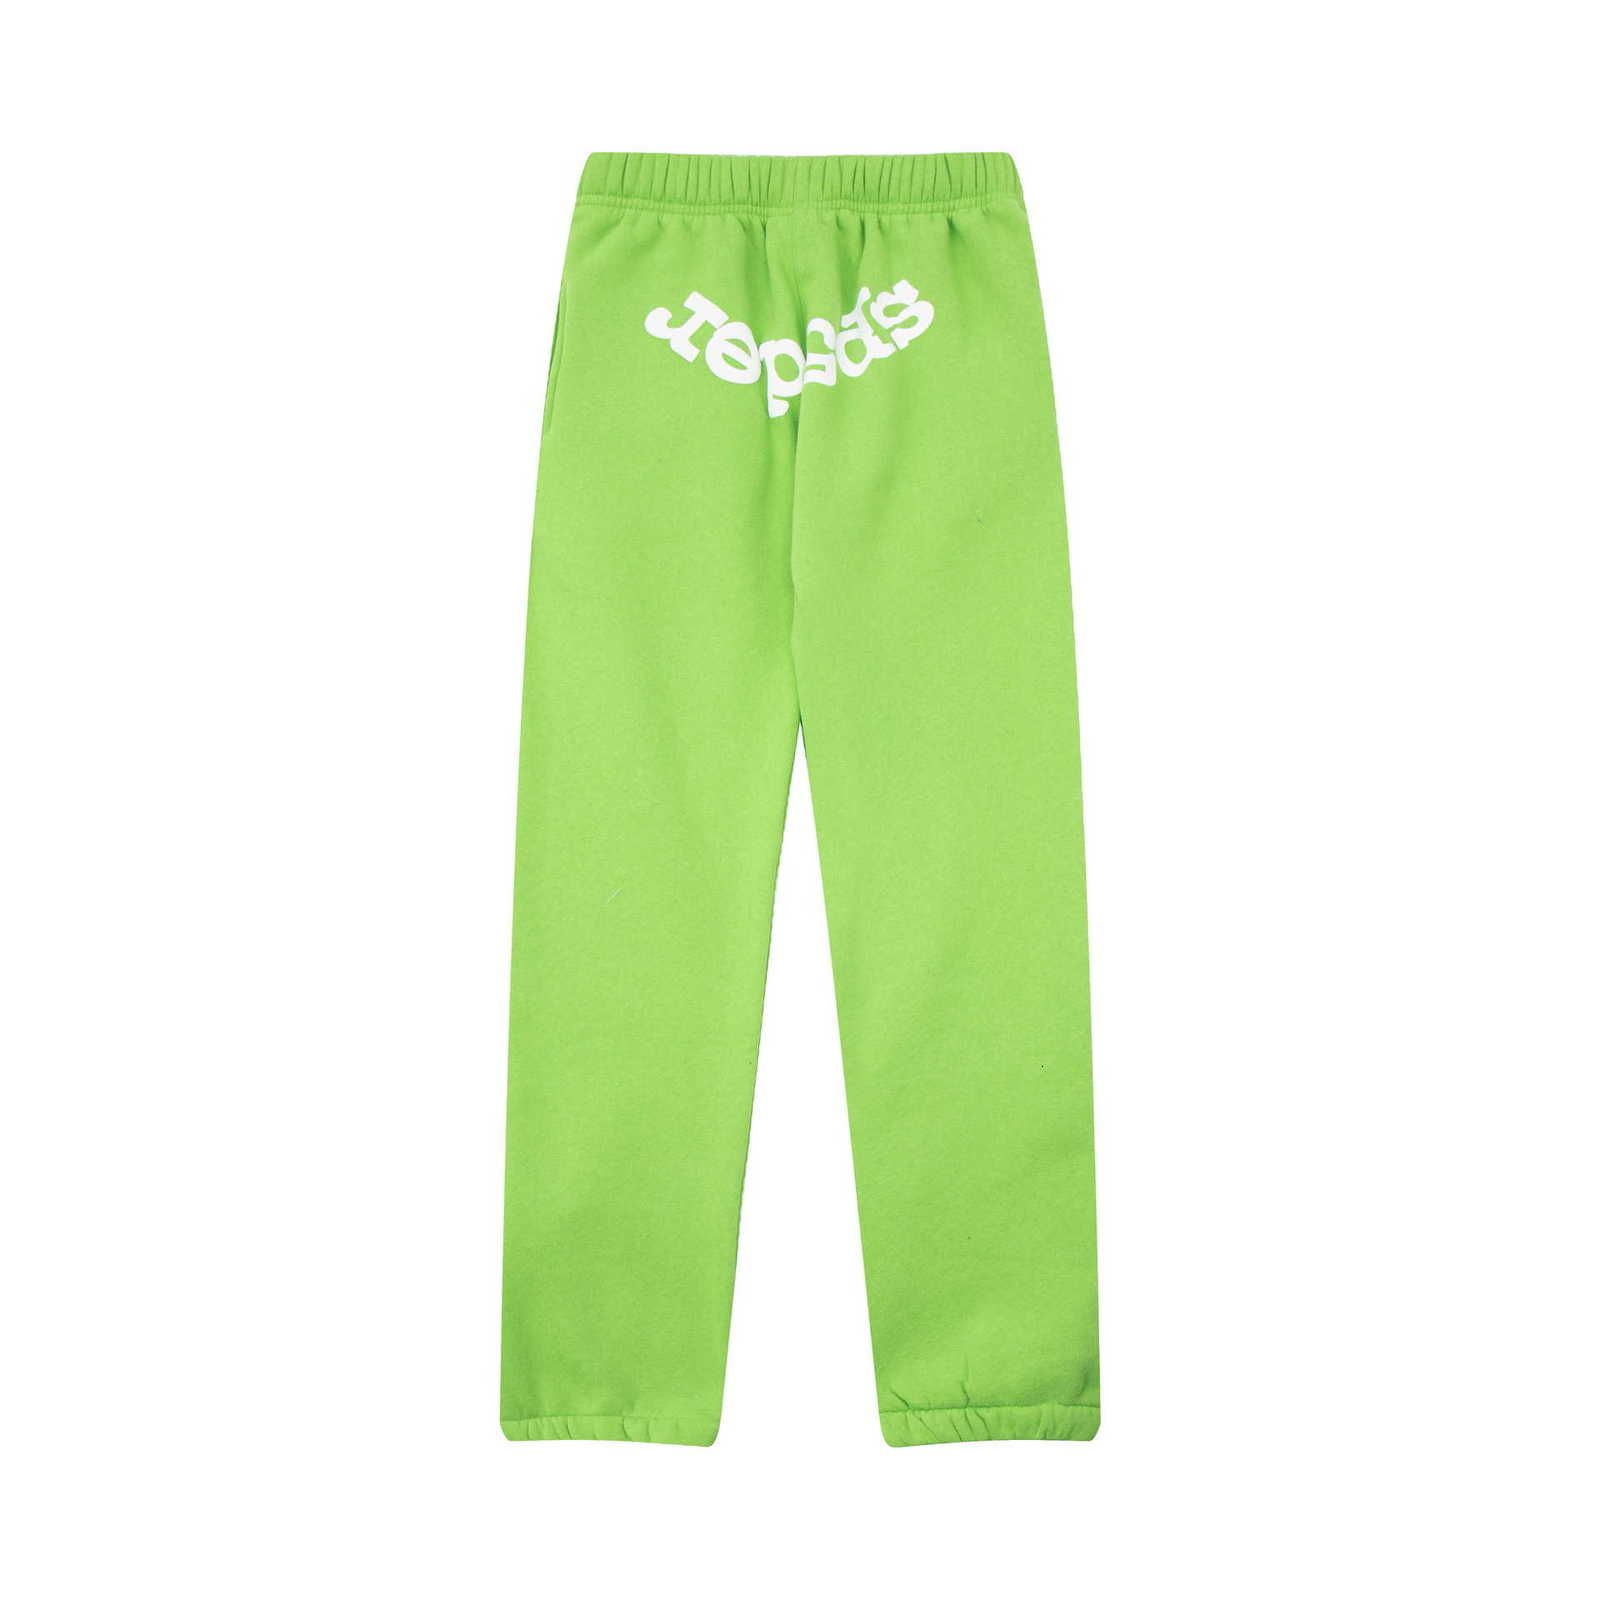 verde (pantaloni sp03)